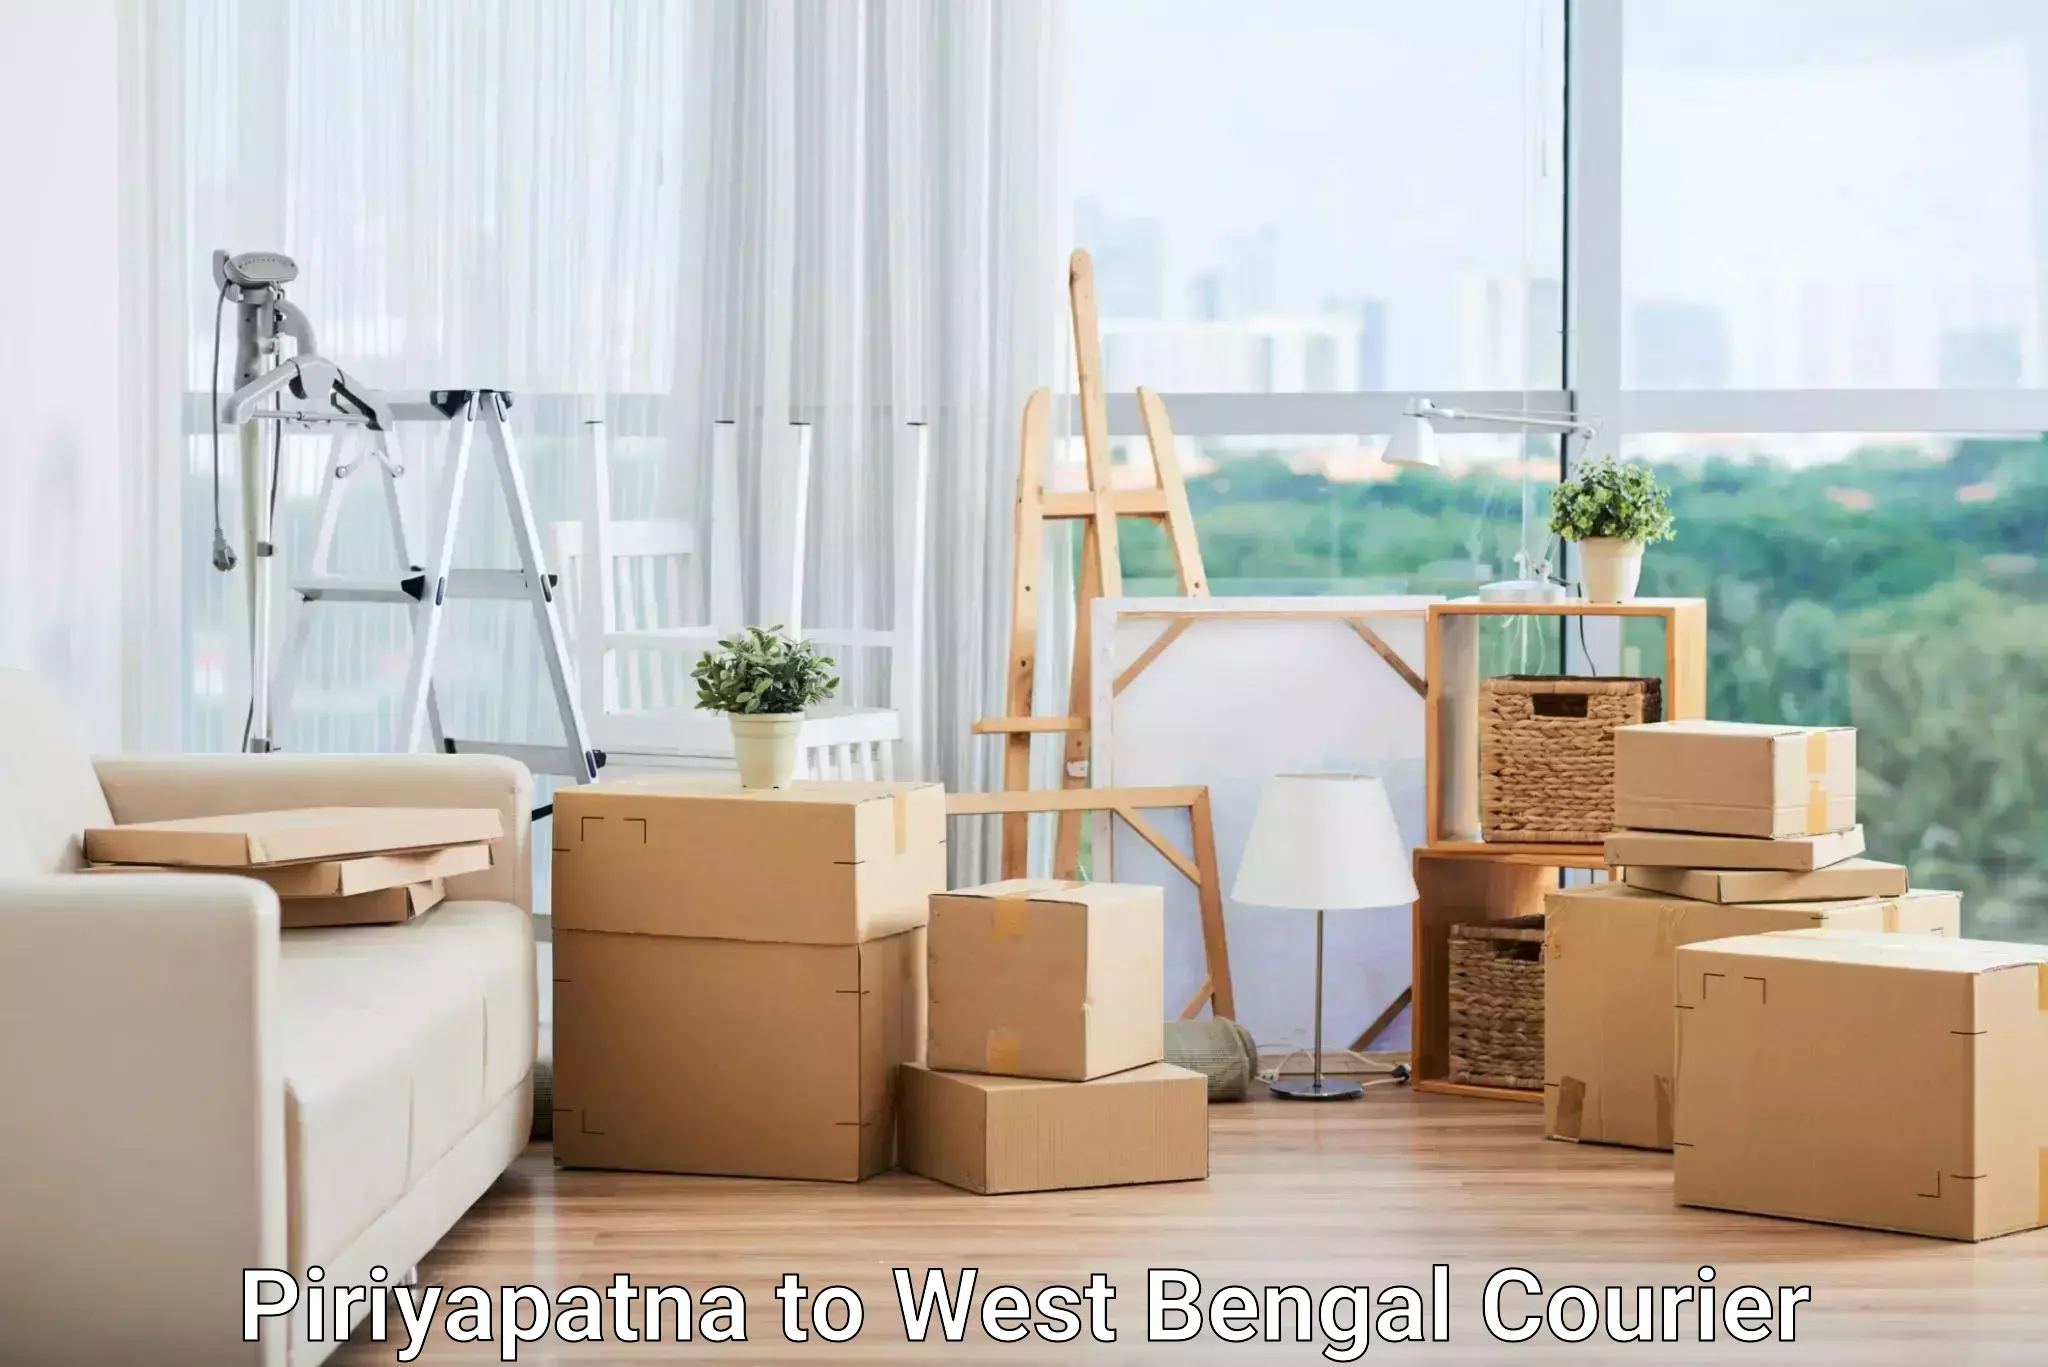 Express logistics service Piriyapatna to West Bengal